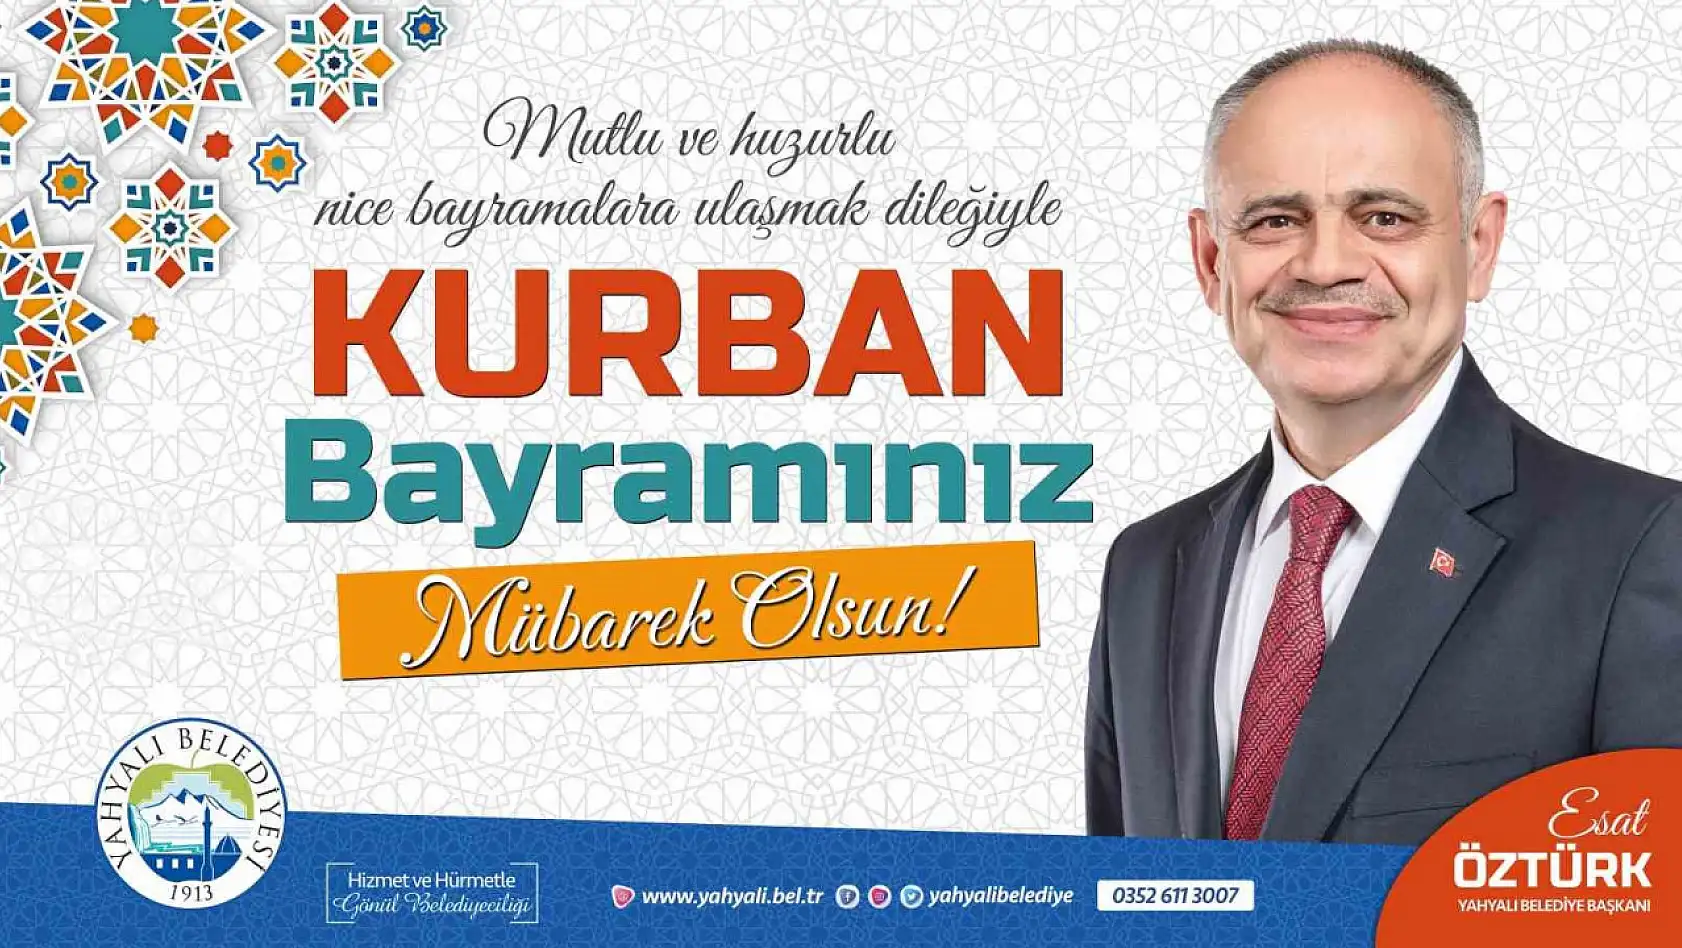 Yahyalı Belediye Başkanı Öztürk'ten bayram mesajı...